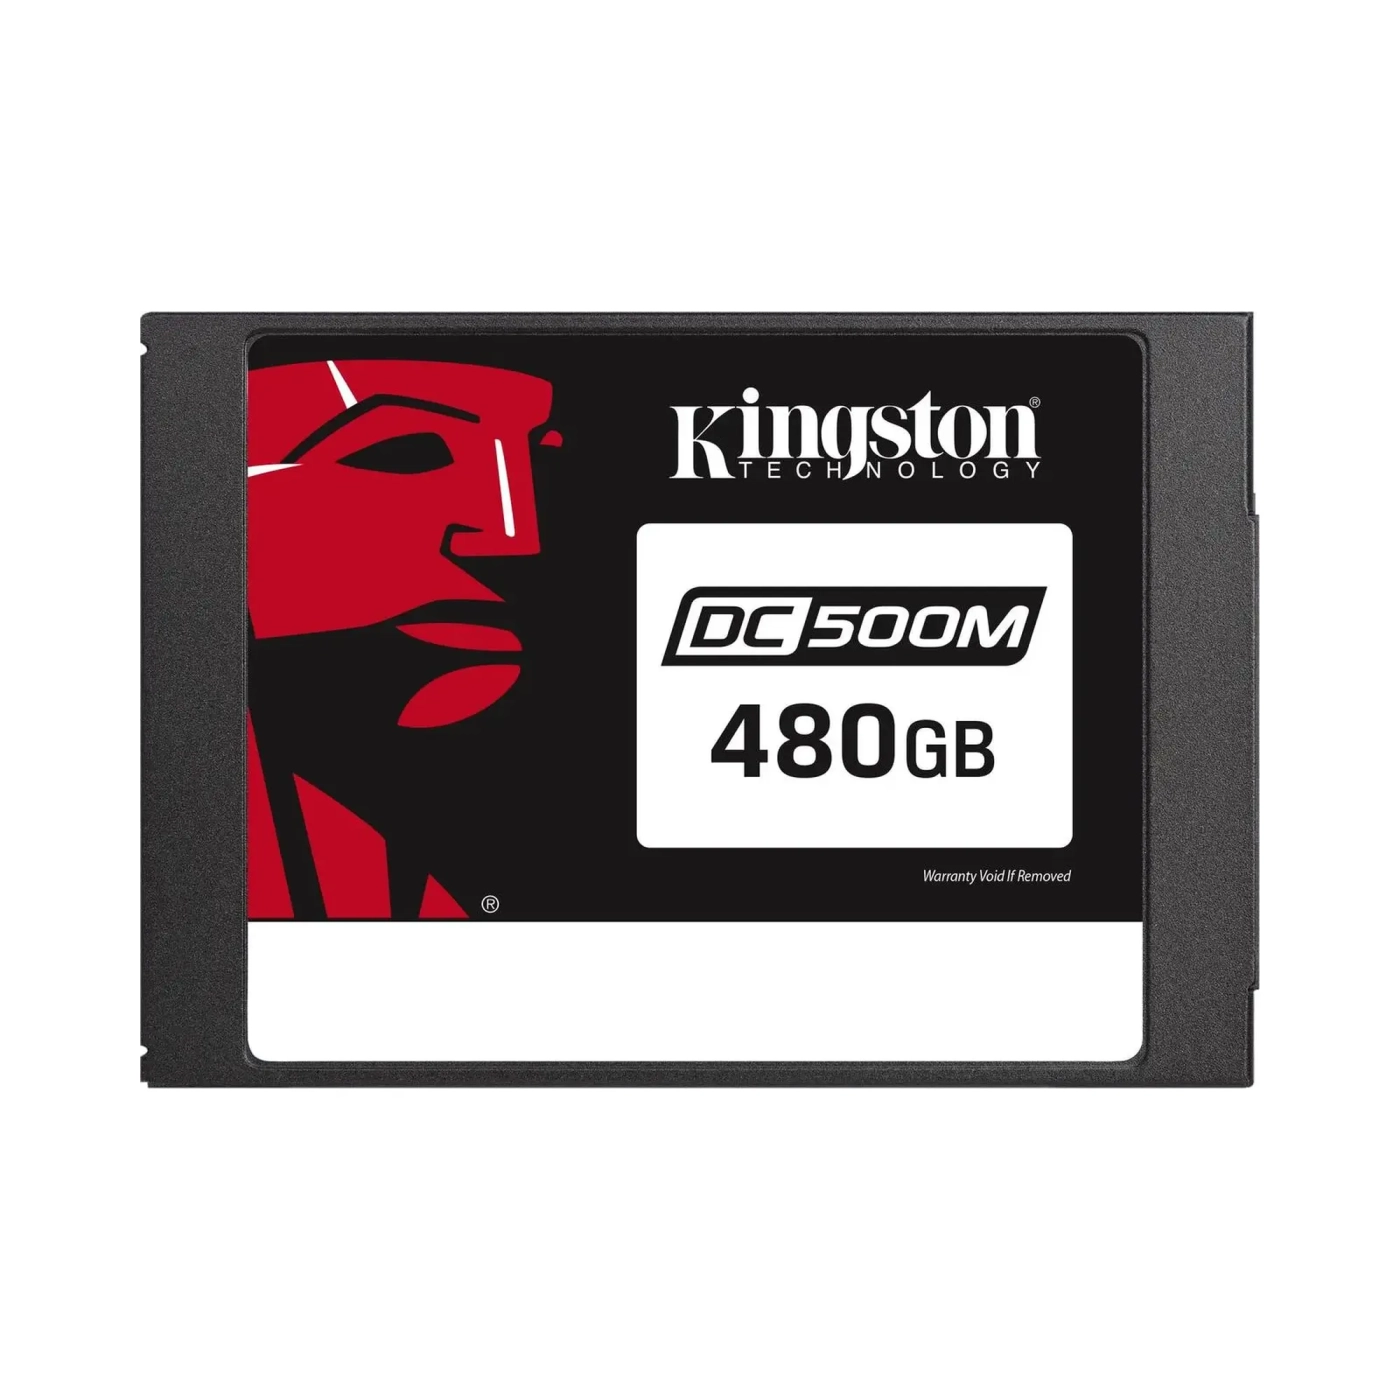 Купити SSD Kingston DC500M 480GB 2.5" SATA III (SEDC500M/480G) - фото 1